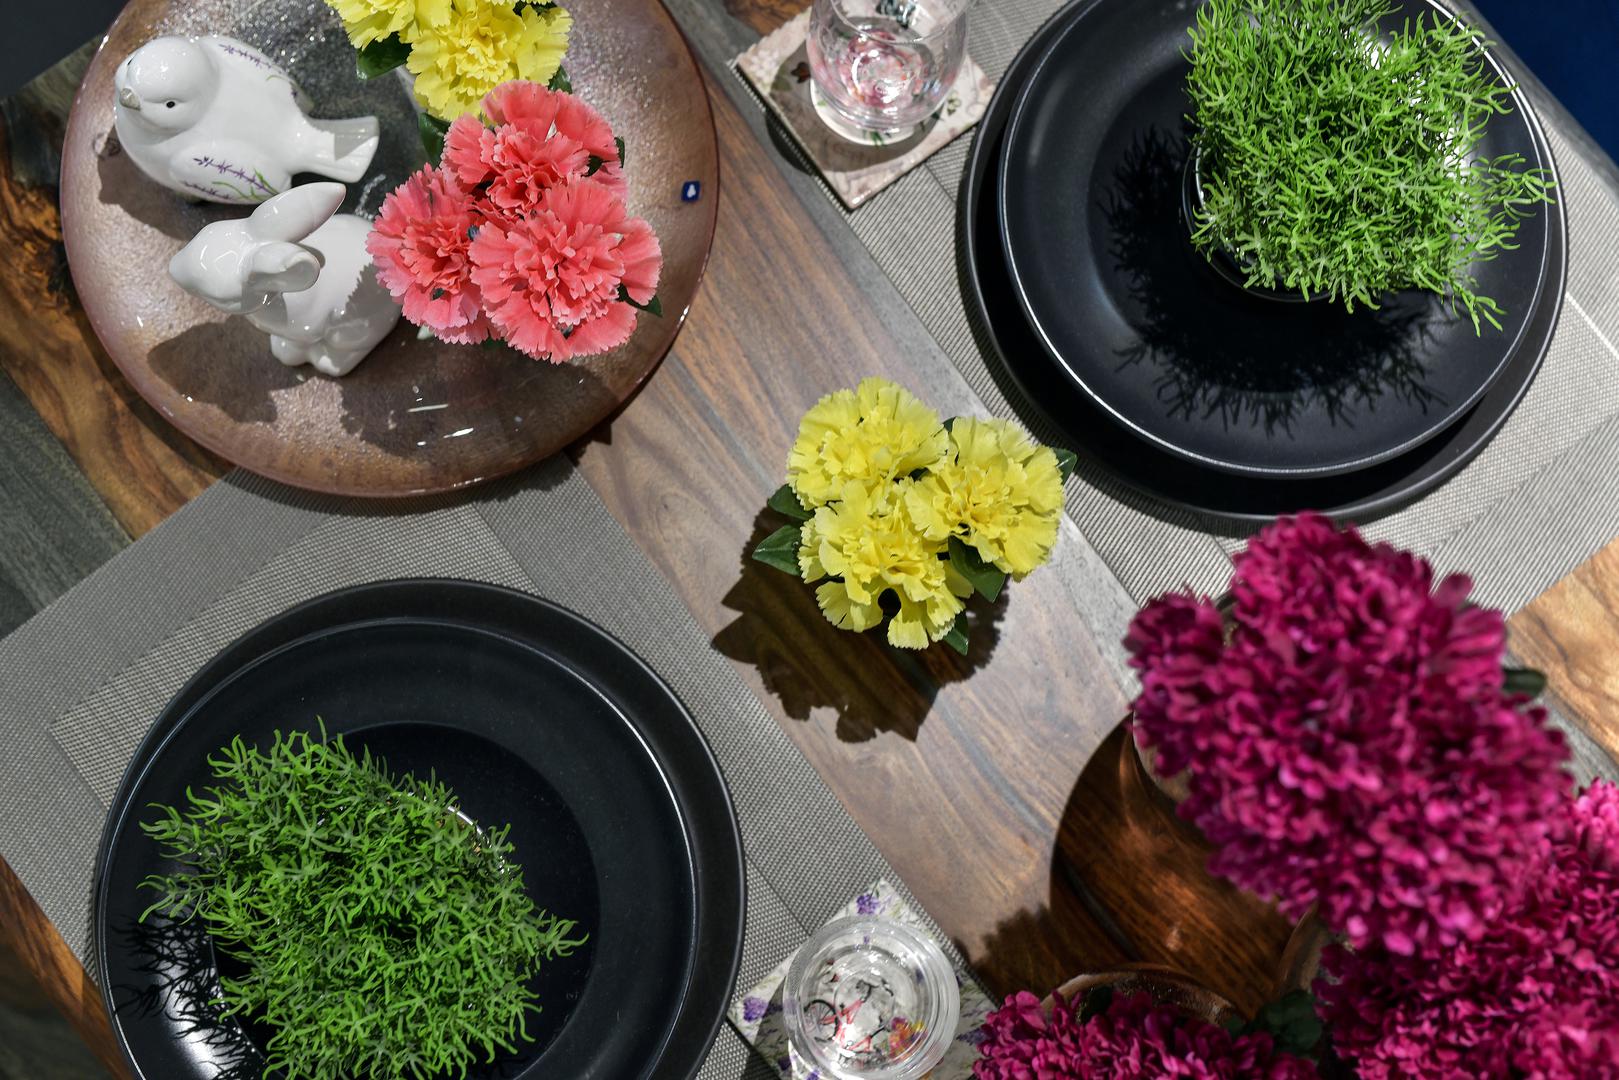 Iskoristite proljetno bogatstvo i šarenilo prirode za dekoriranje blagdanskog doma